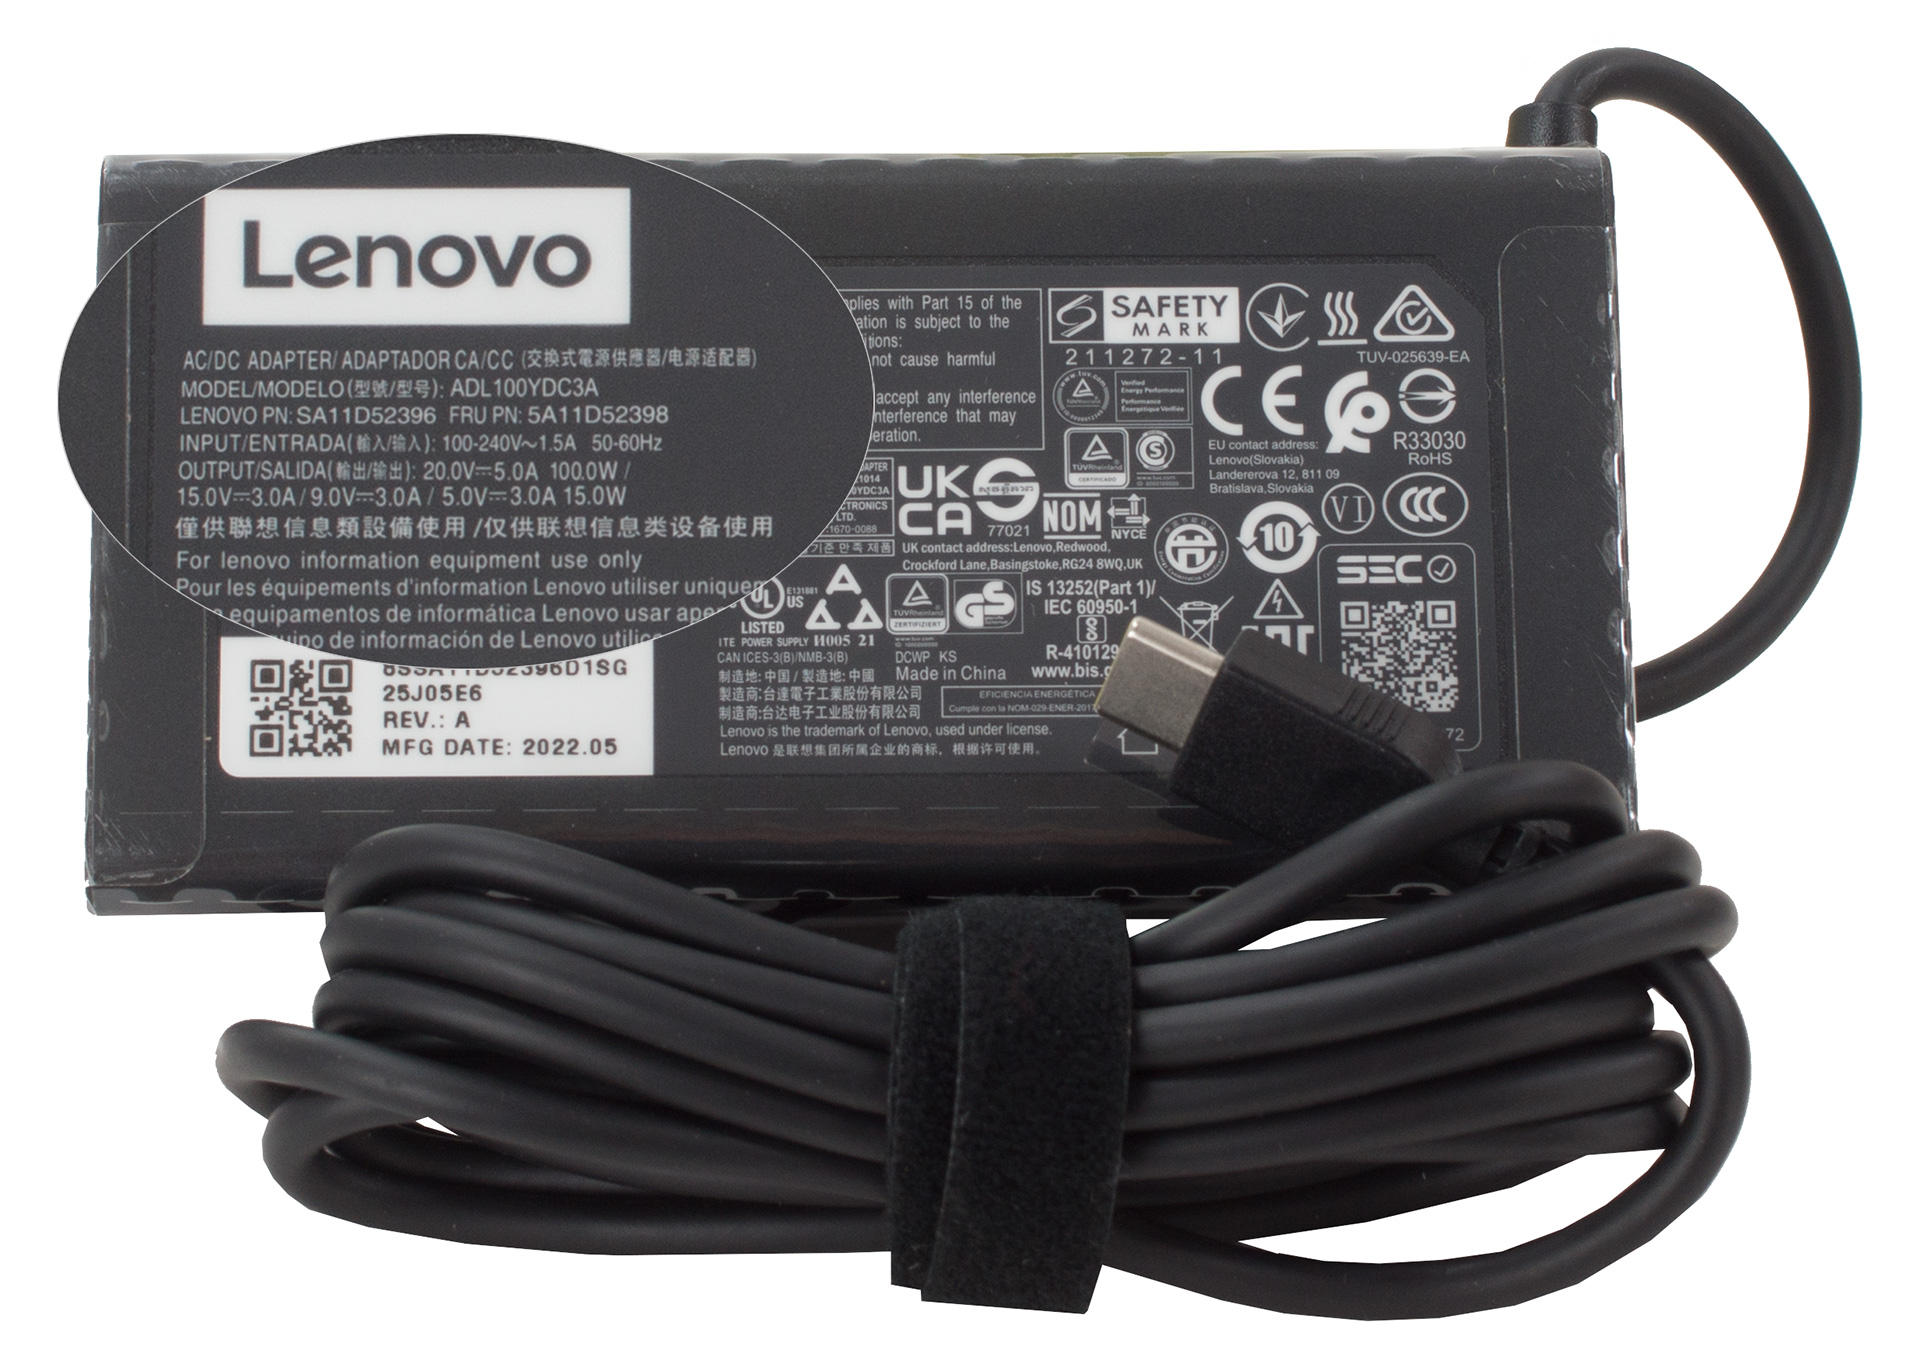 Cómo utilizar los botones de tu Lenovo Pen - Lenovo Support US